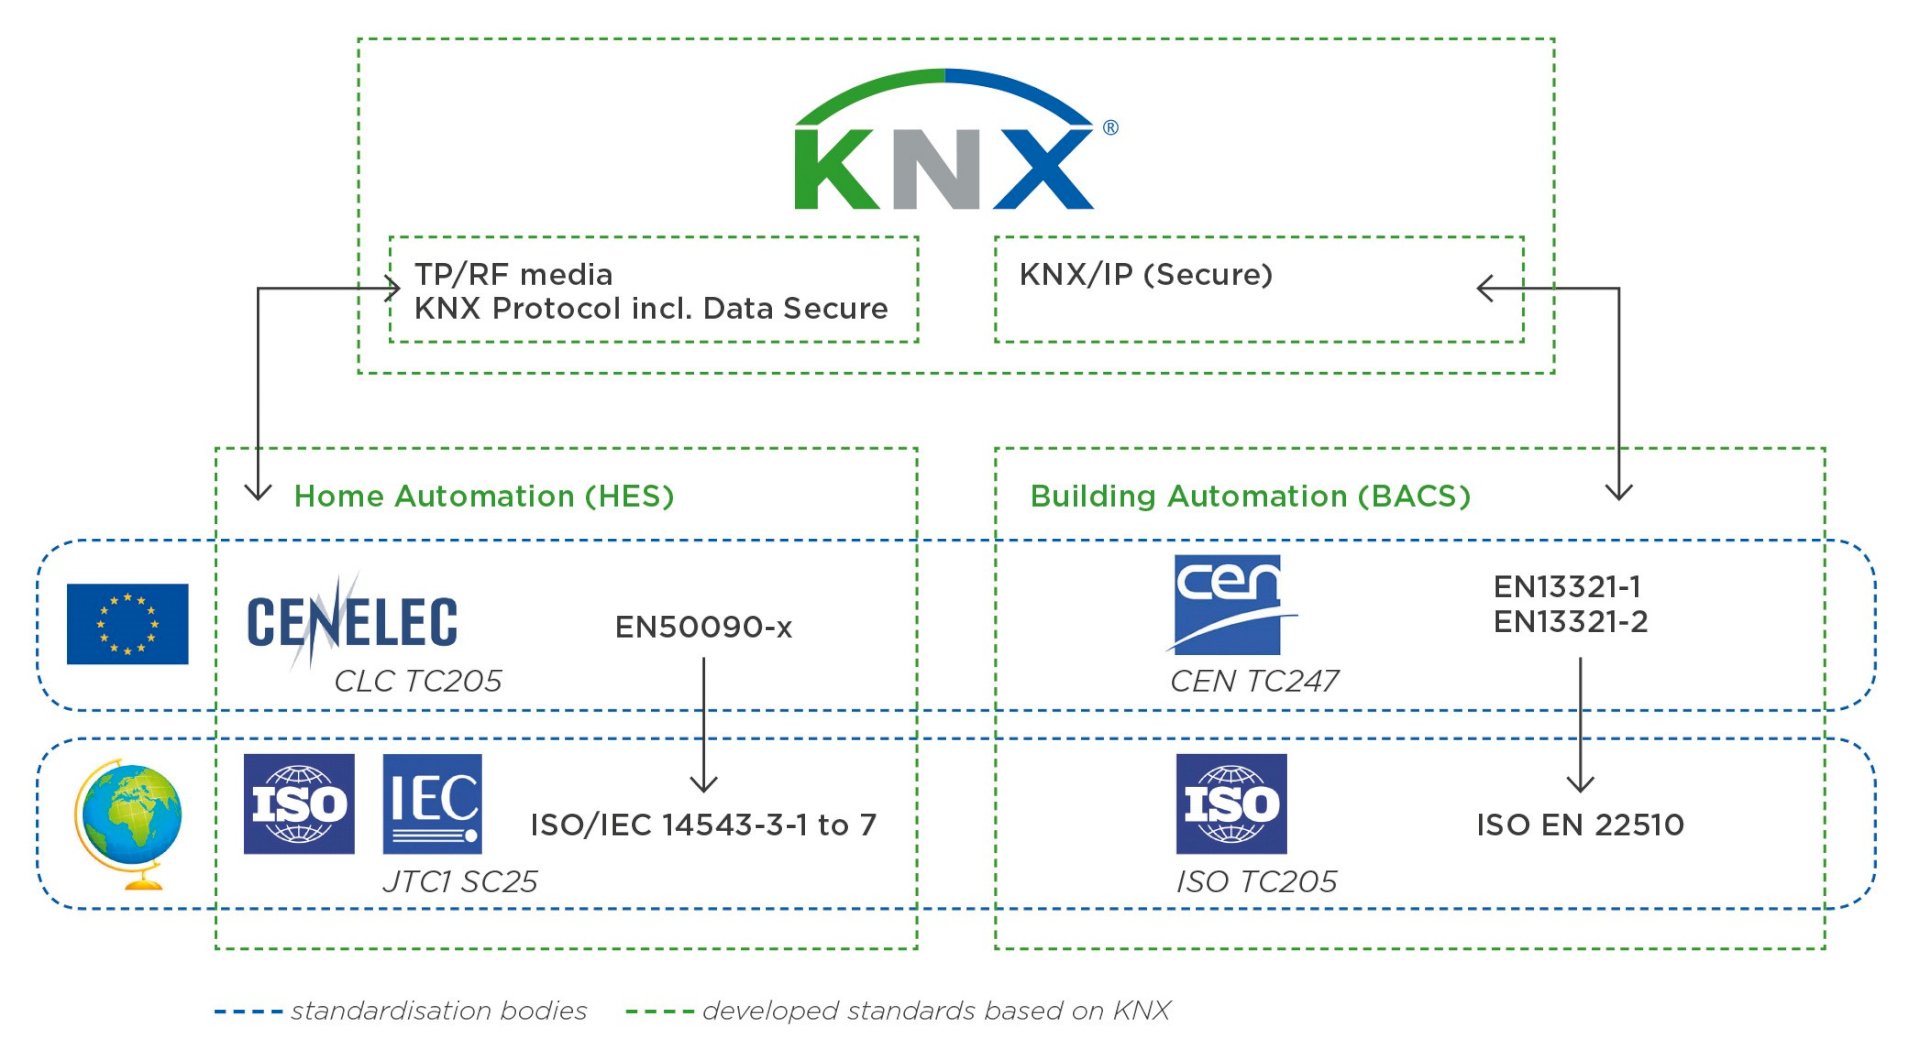 Nieuwe ISO-norm: KNX IP Secure erkend als onafhankelijke veiligheidsstandaard